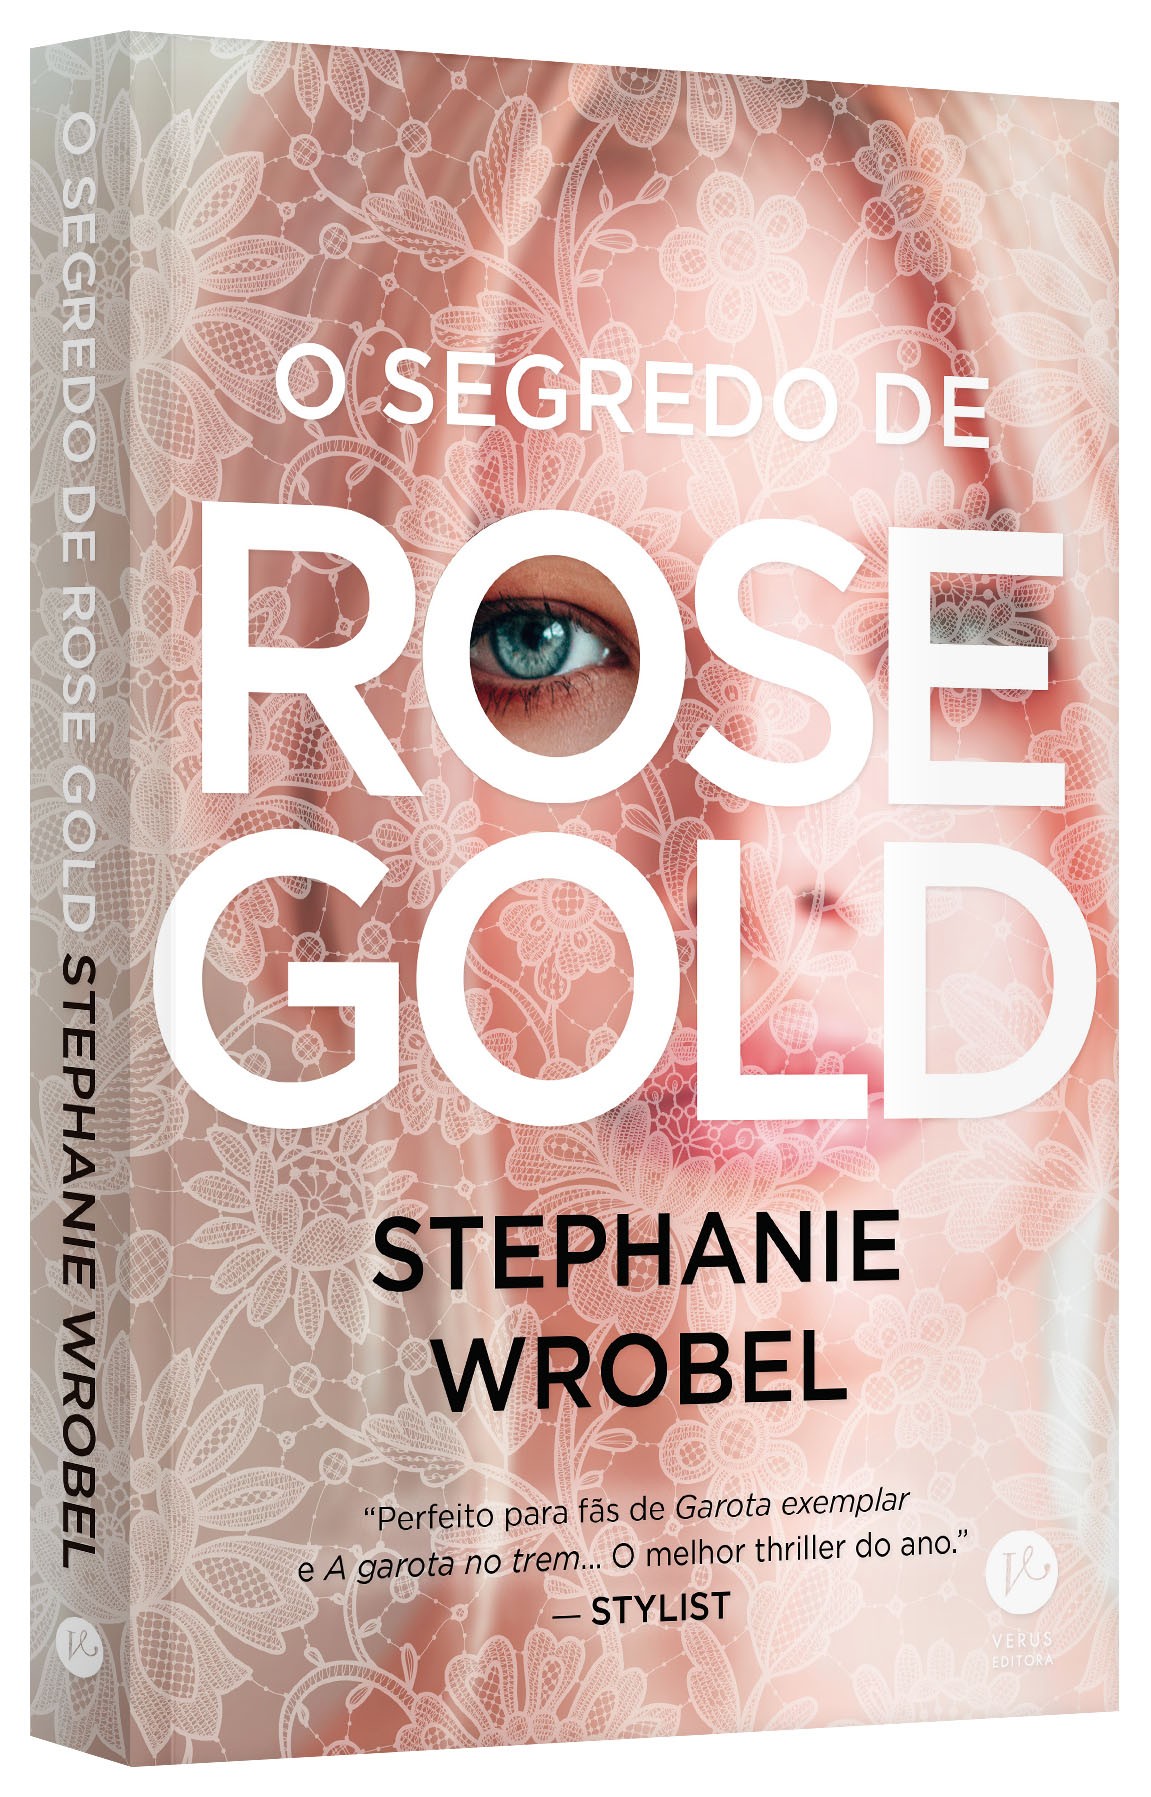  O segredo de Rose Gold (Ed. Verus | Grupo Editorial Record, 308 pág., R$ 44,90) (Foto: Divulgação)